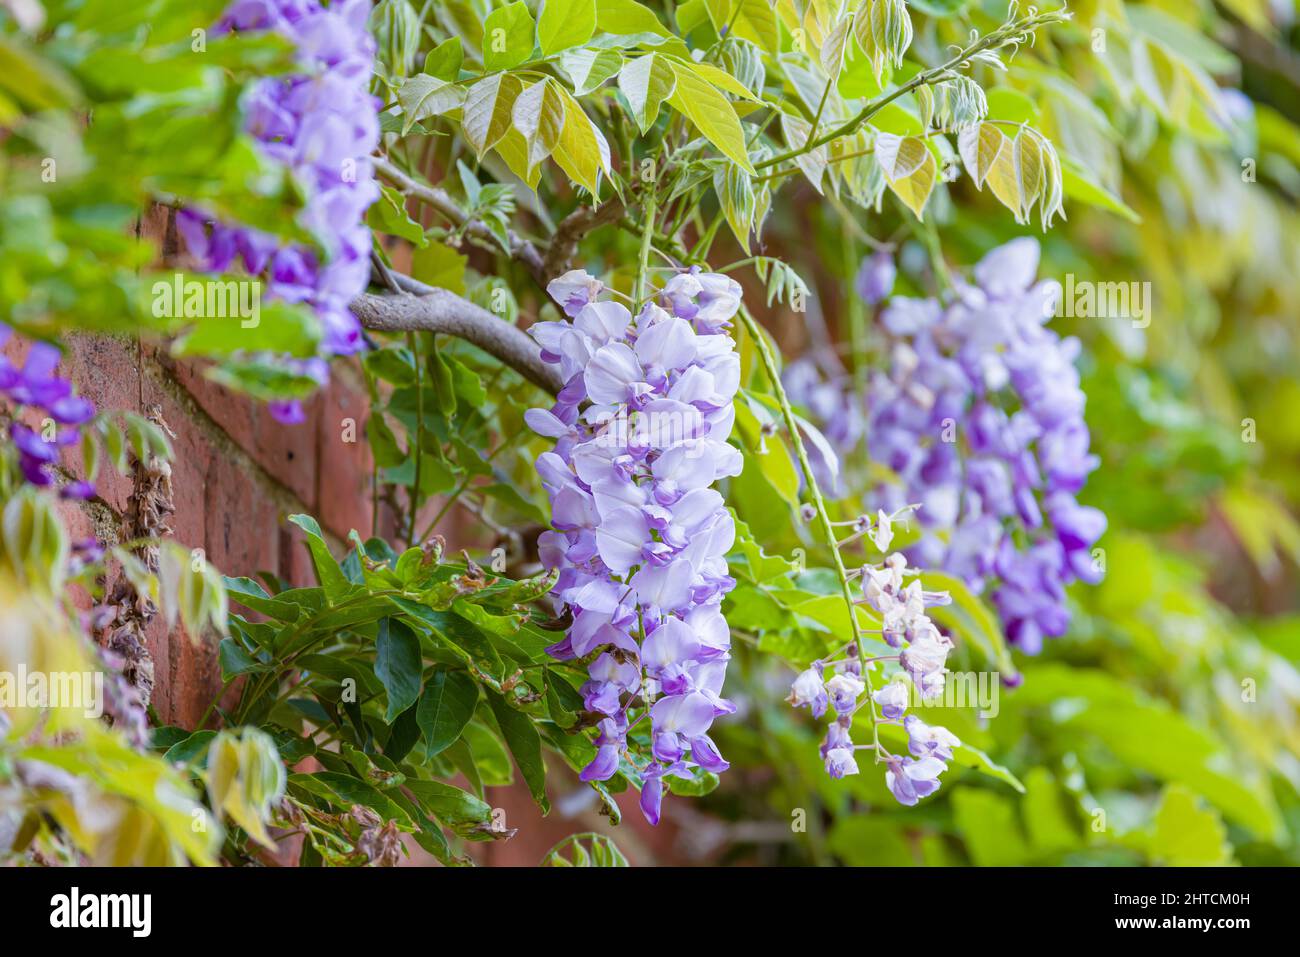 Fiori di glicine (racemi). Viti di una pianta di wisteria rampicante o albero che cresce su un muro di casa in primavera, Regno Unito. Foto Stock